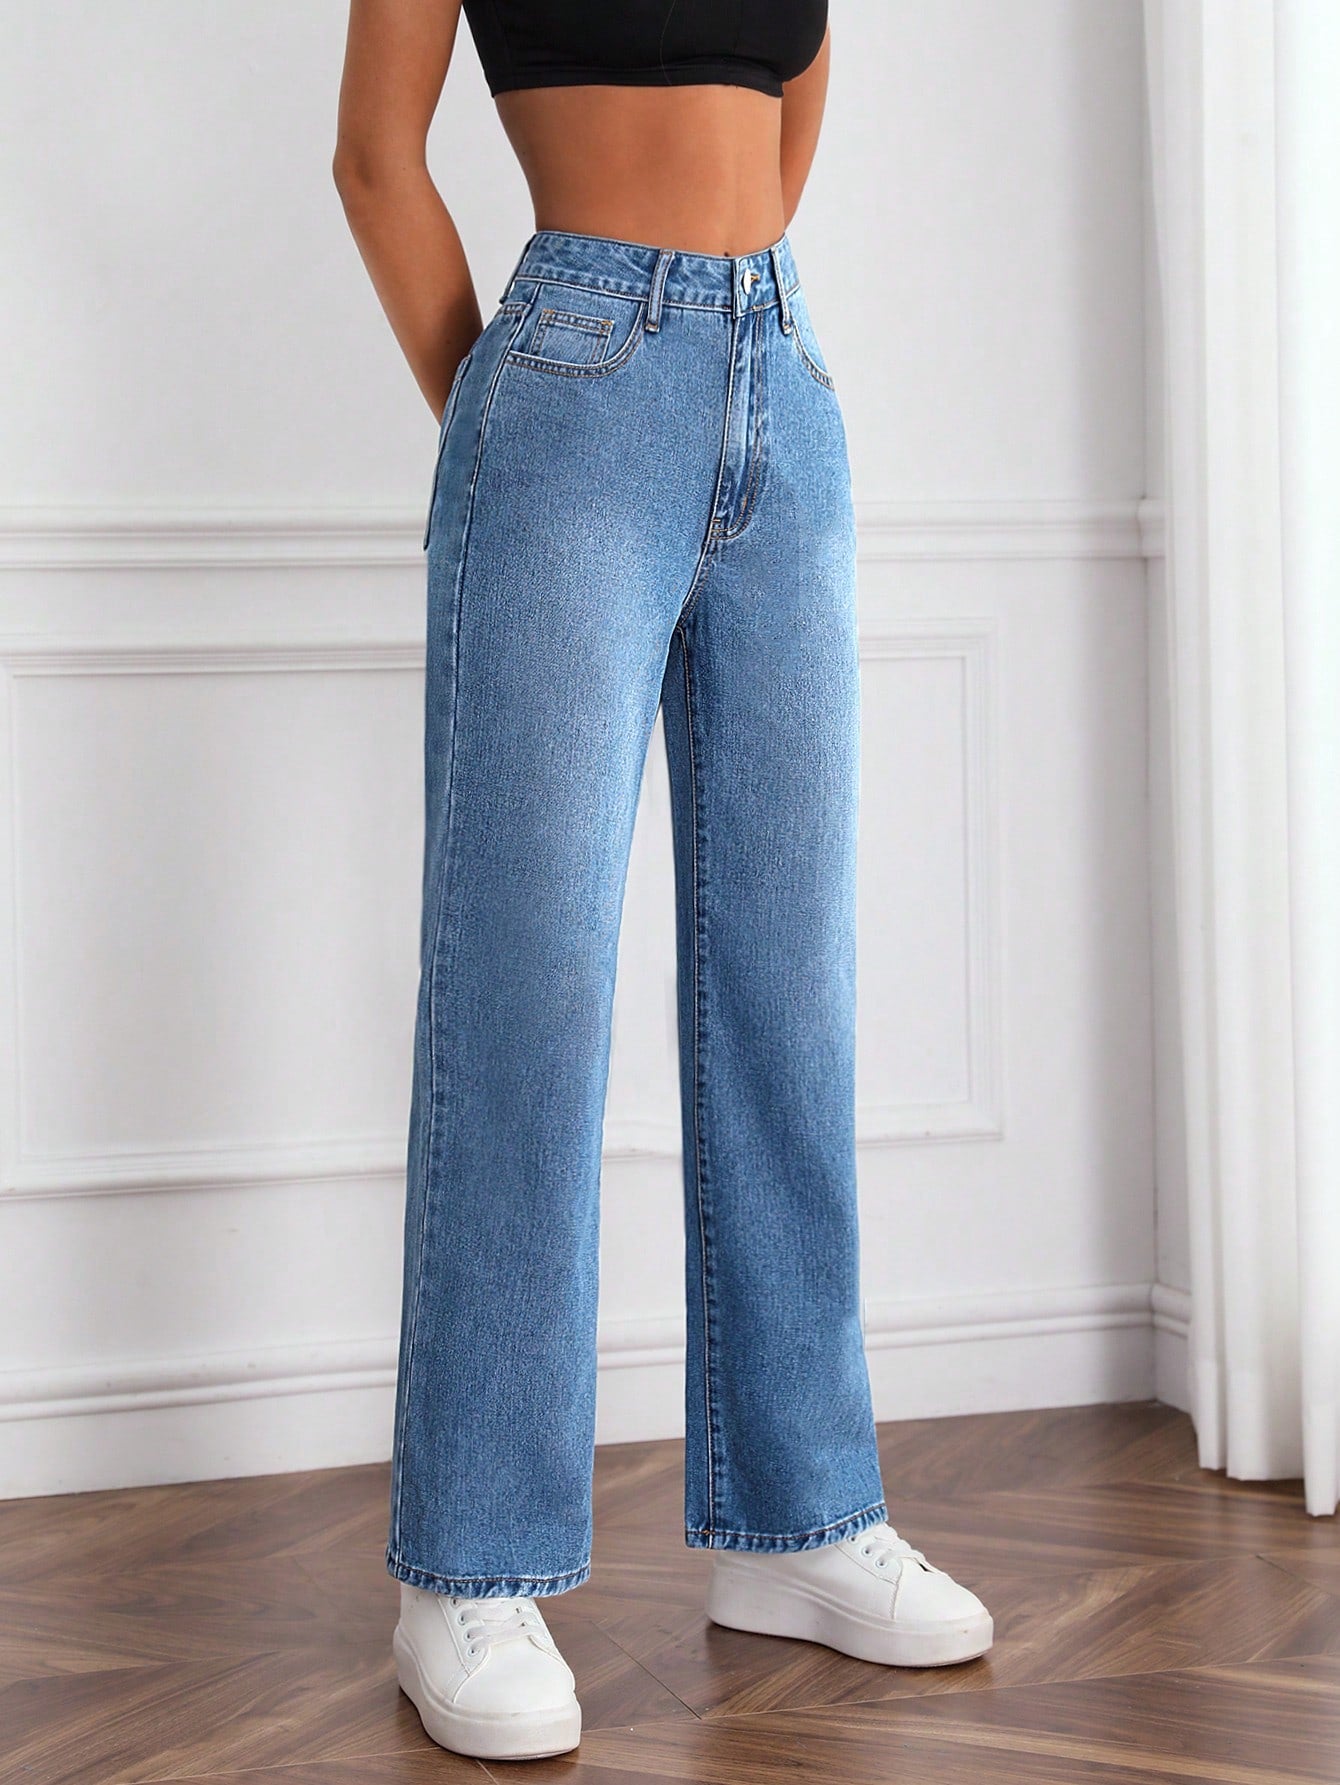 Slant Pocket Jeans